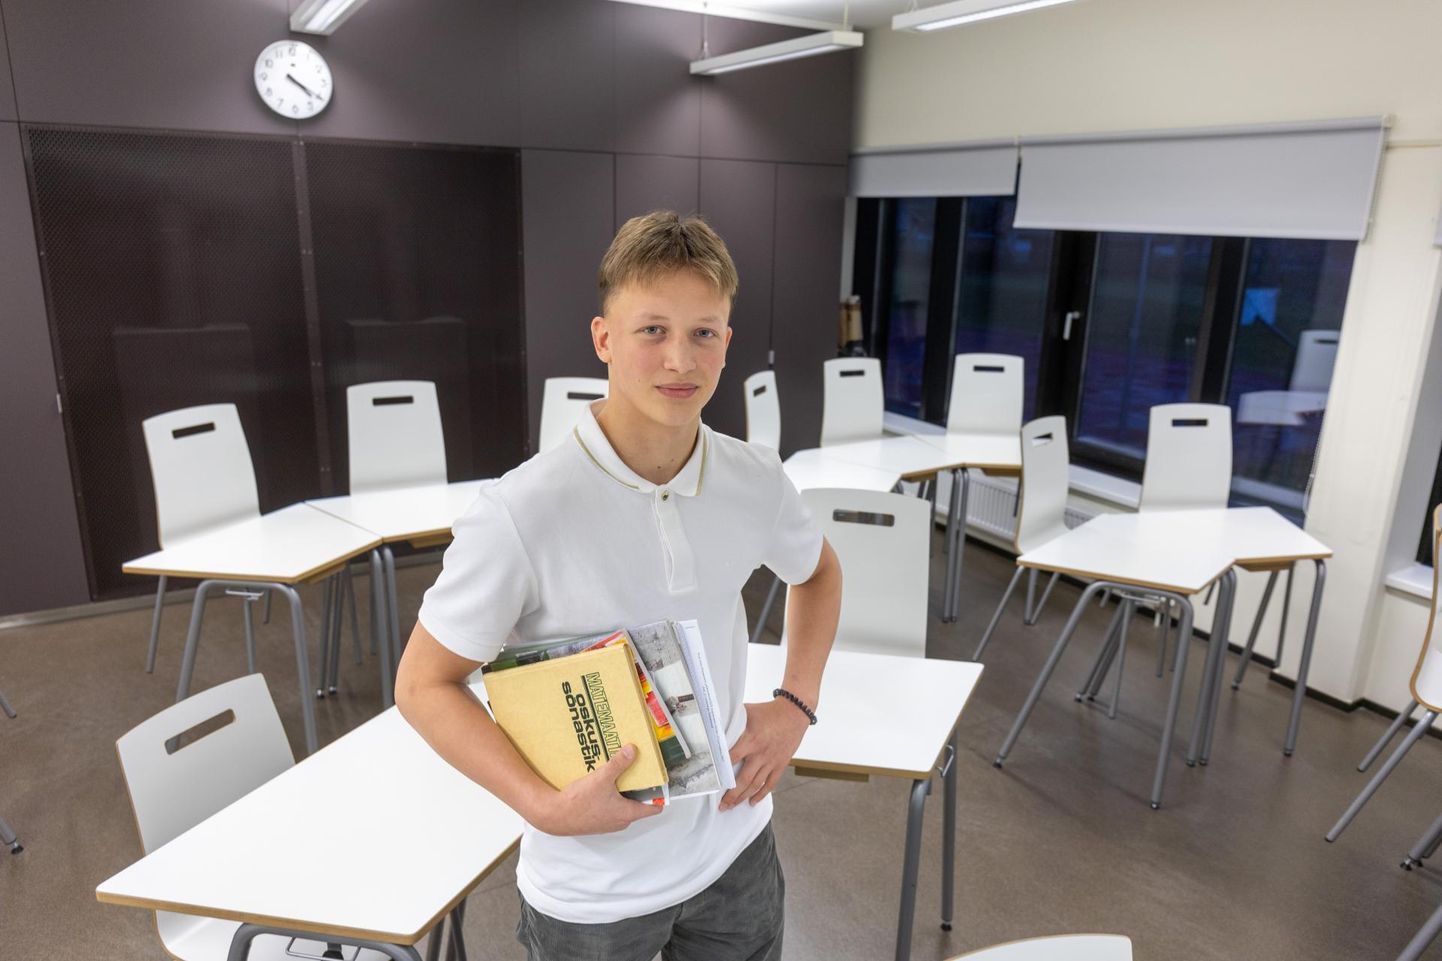 Ukrainast pärit noormees Oleksandr Kosyntsev kolis Eestisse 2022. aasta märtsis. Praeguseks on ta eesti keele nii hästi selgeks saanud, et õpib Viljandi gümnaasiumis.